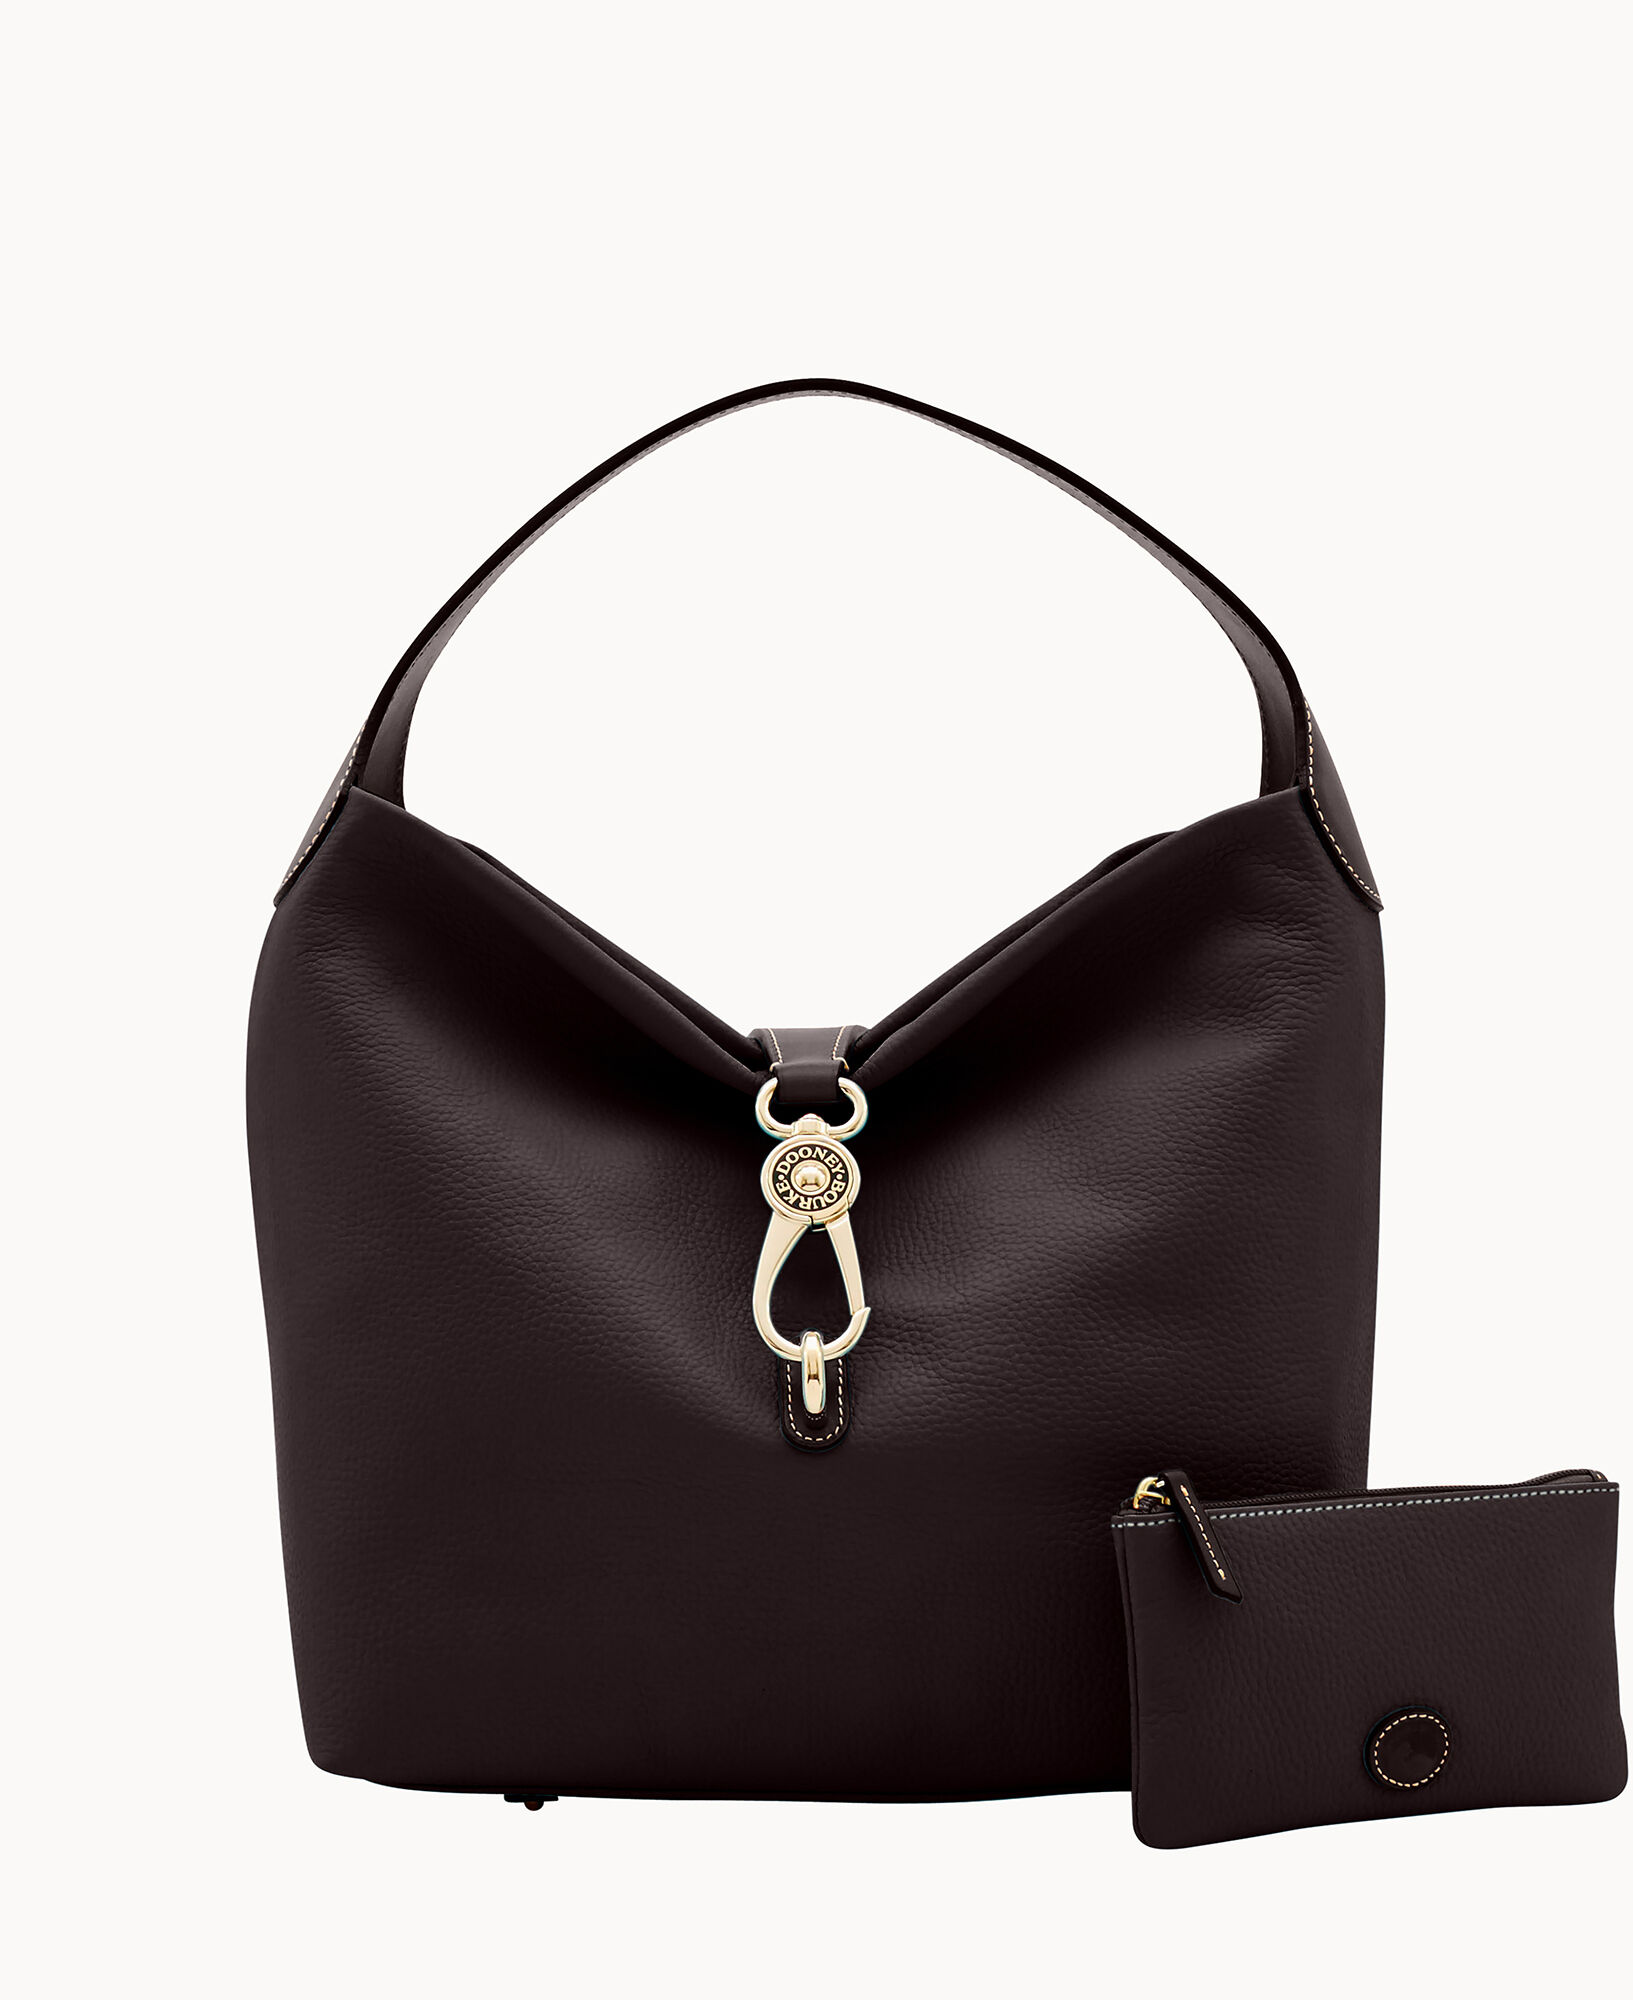 Dooney & Bourke, Bags, Dooney Bourke Logo Lock Sac Belvedere Black  Leather Handbag